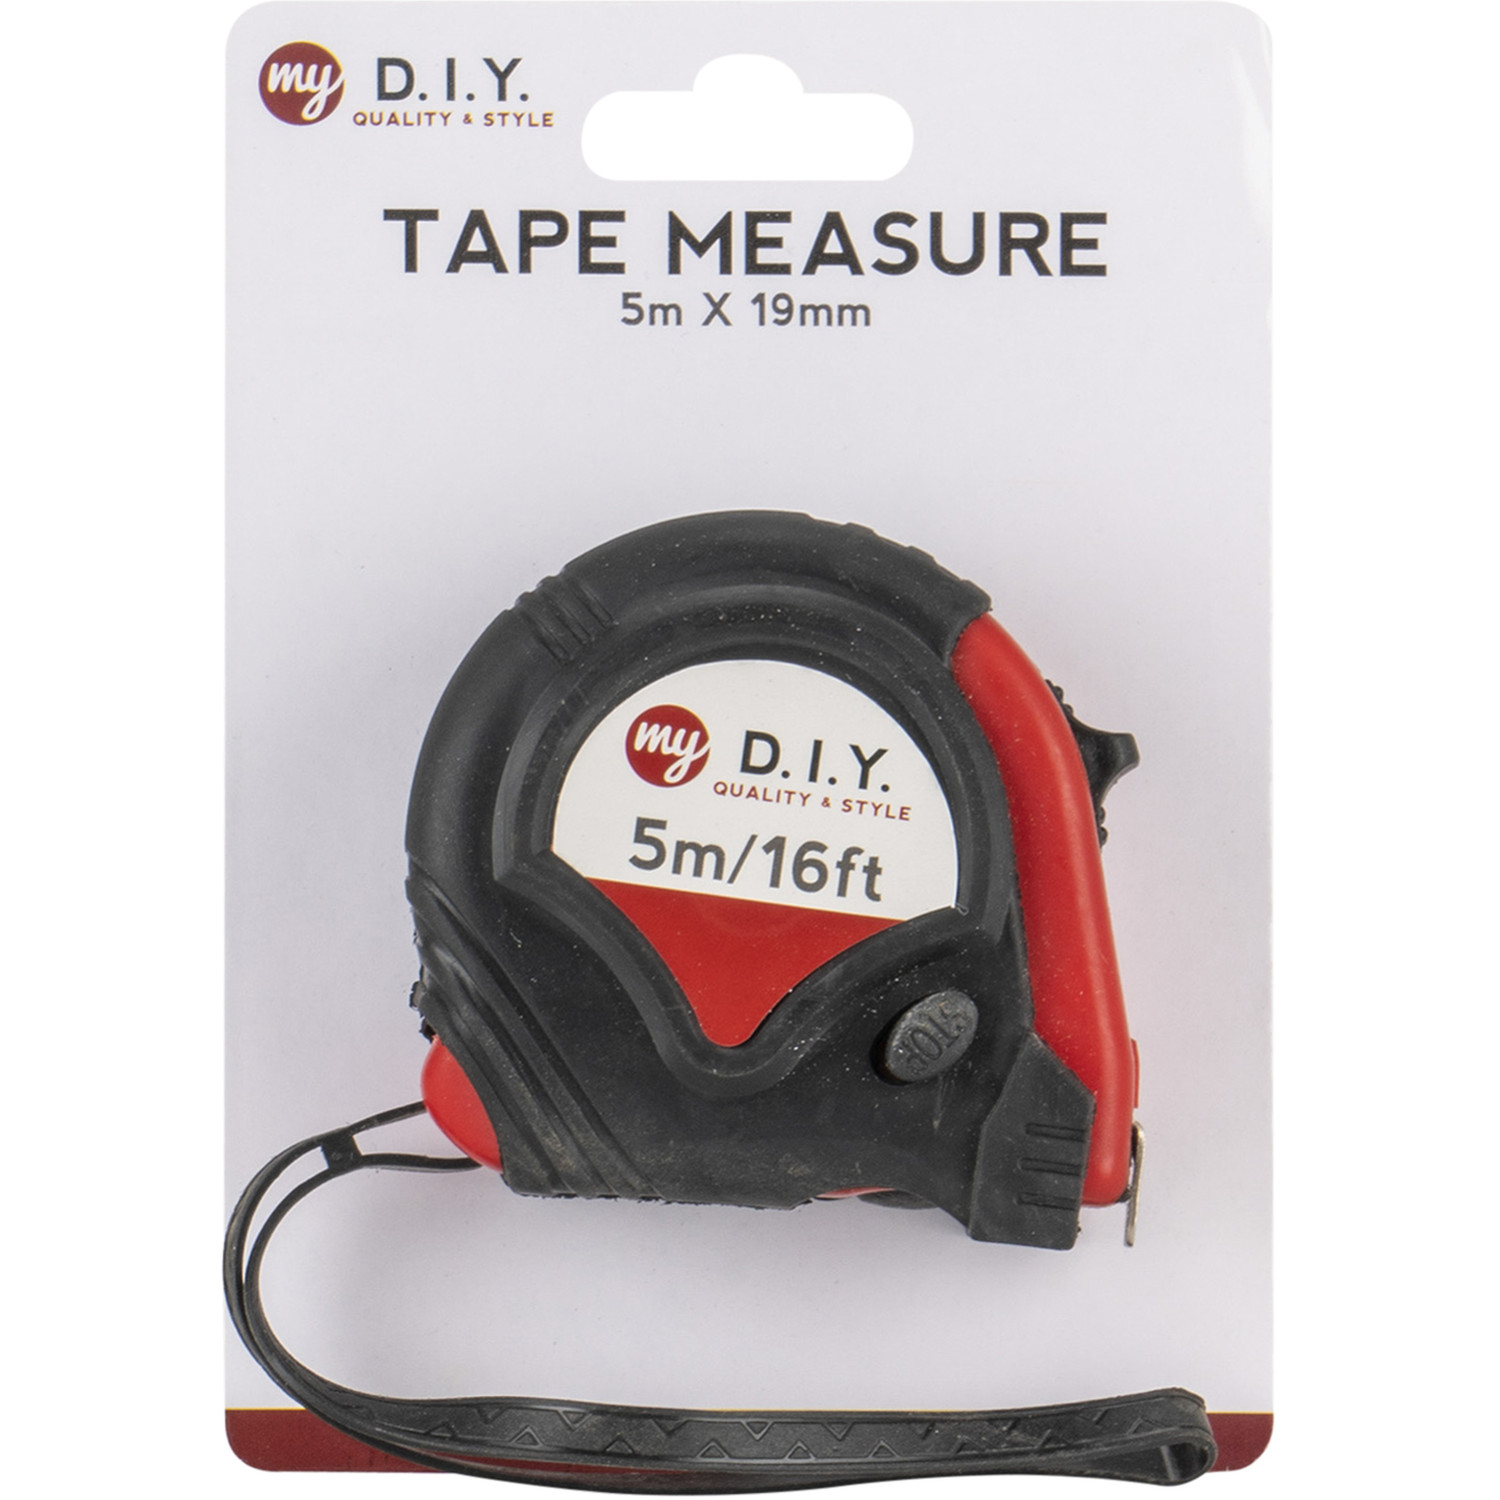 My DIY Tape Measure 5m Image